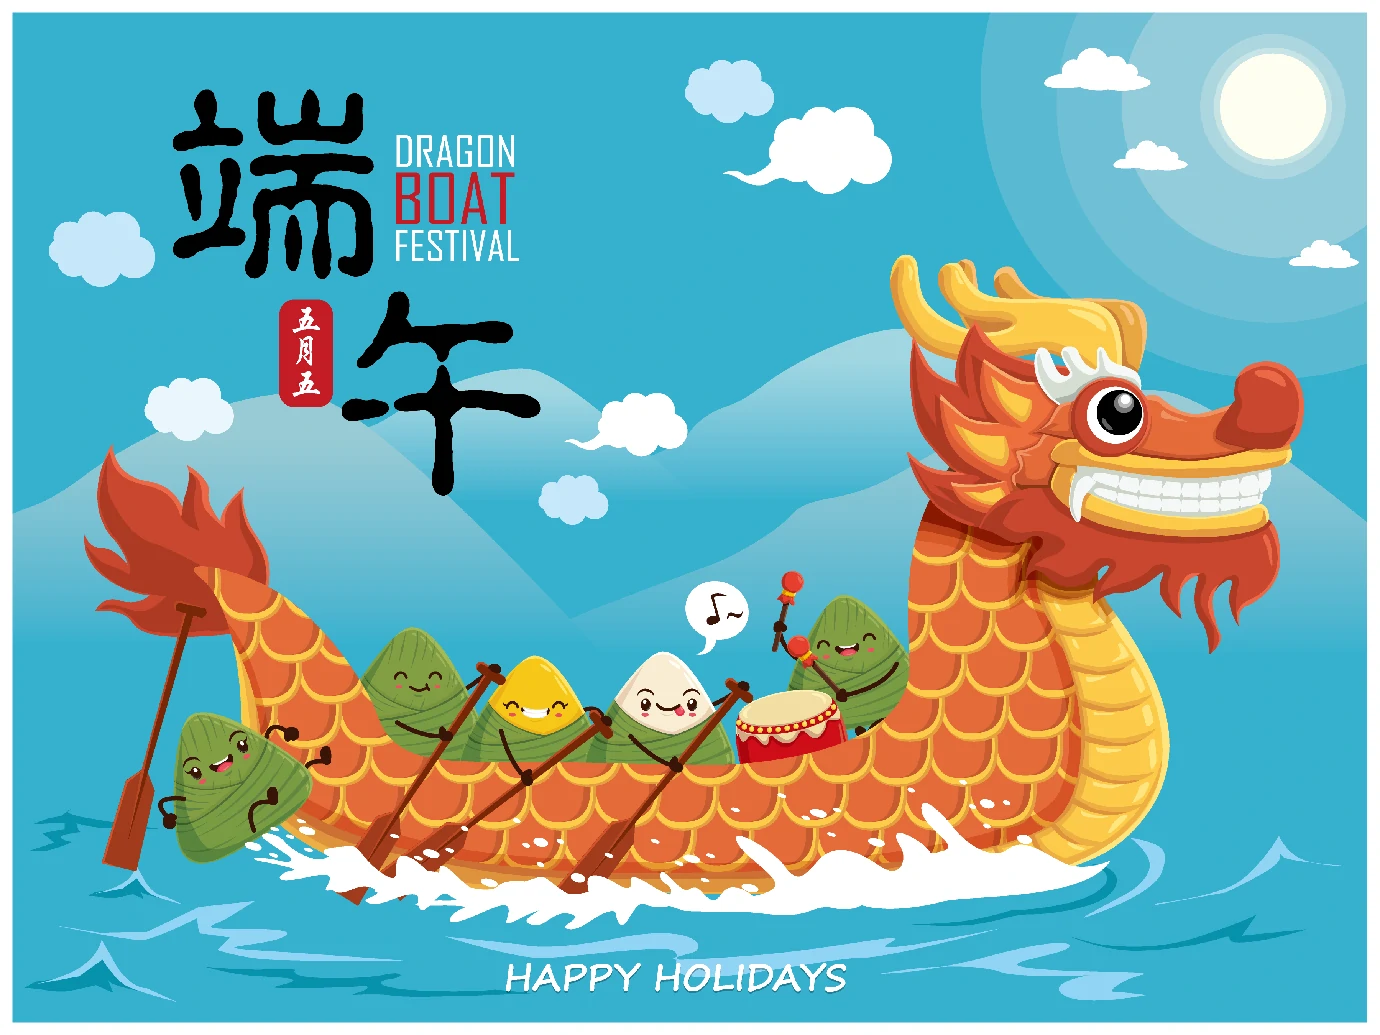 中国传统节日卡通手绘端午节赛龙舟粽子插画海报AI矢量设计素材【040】